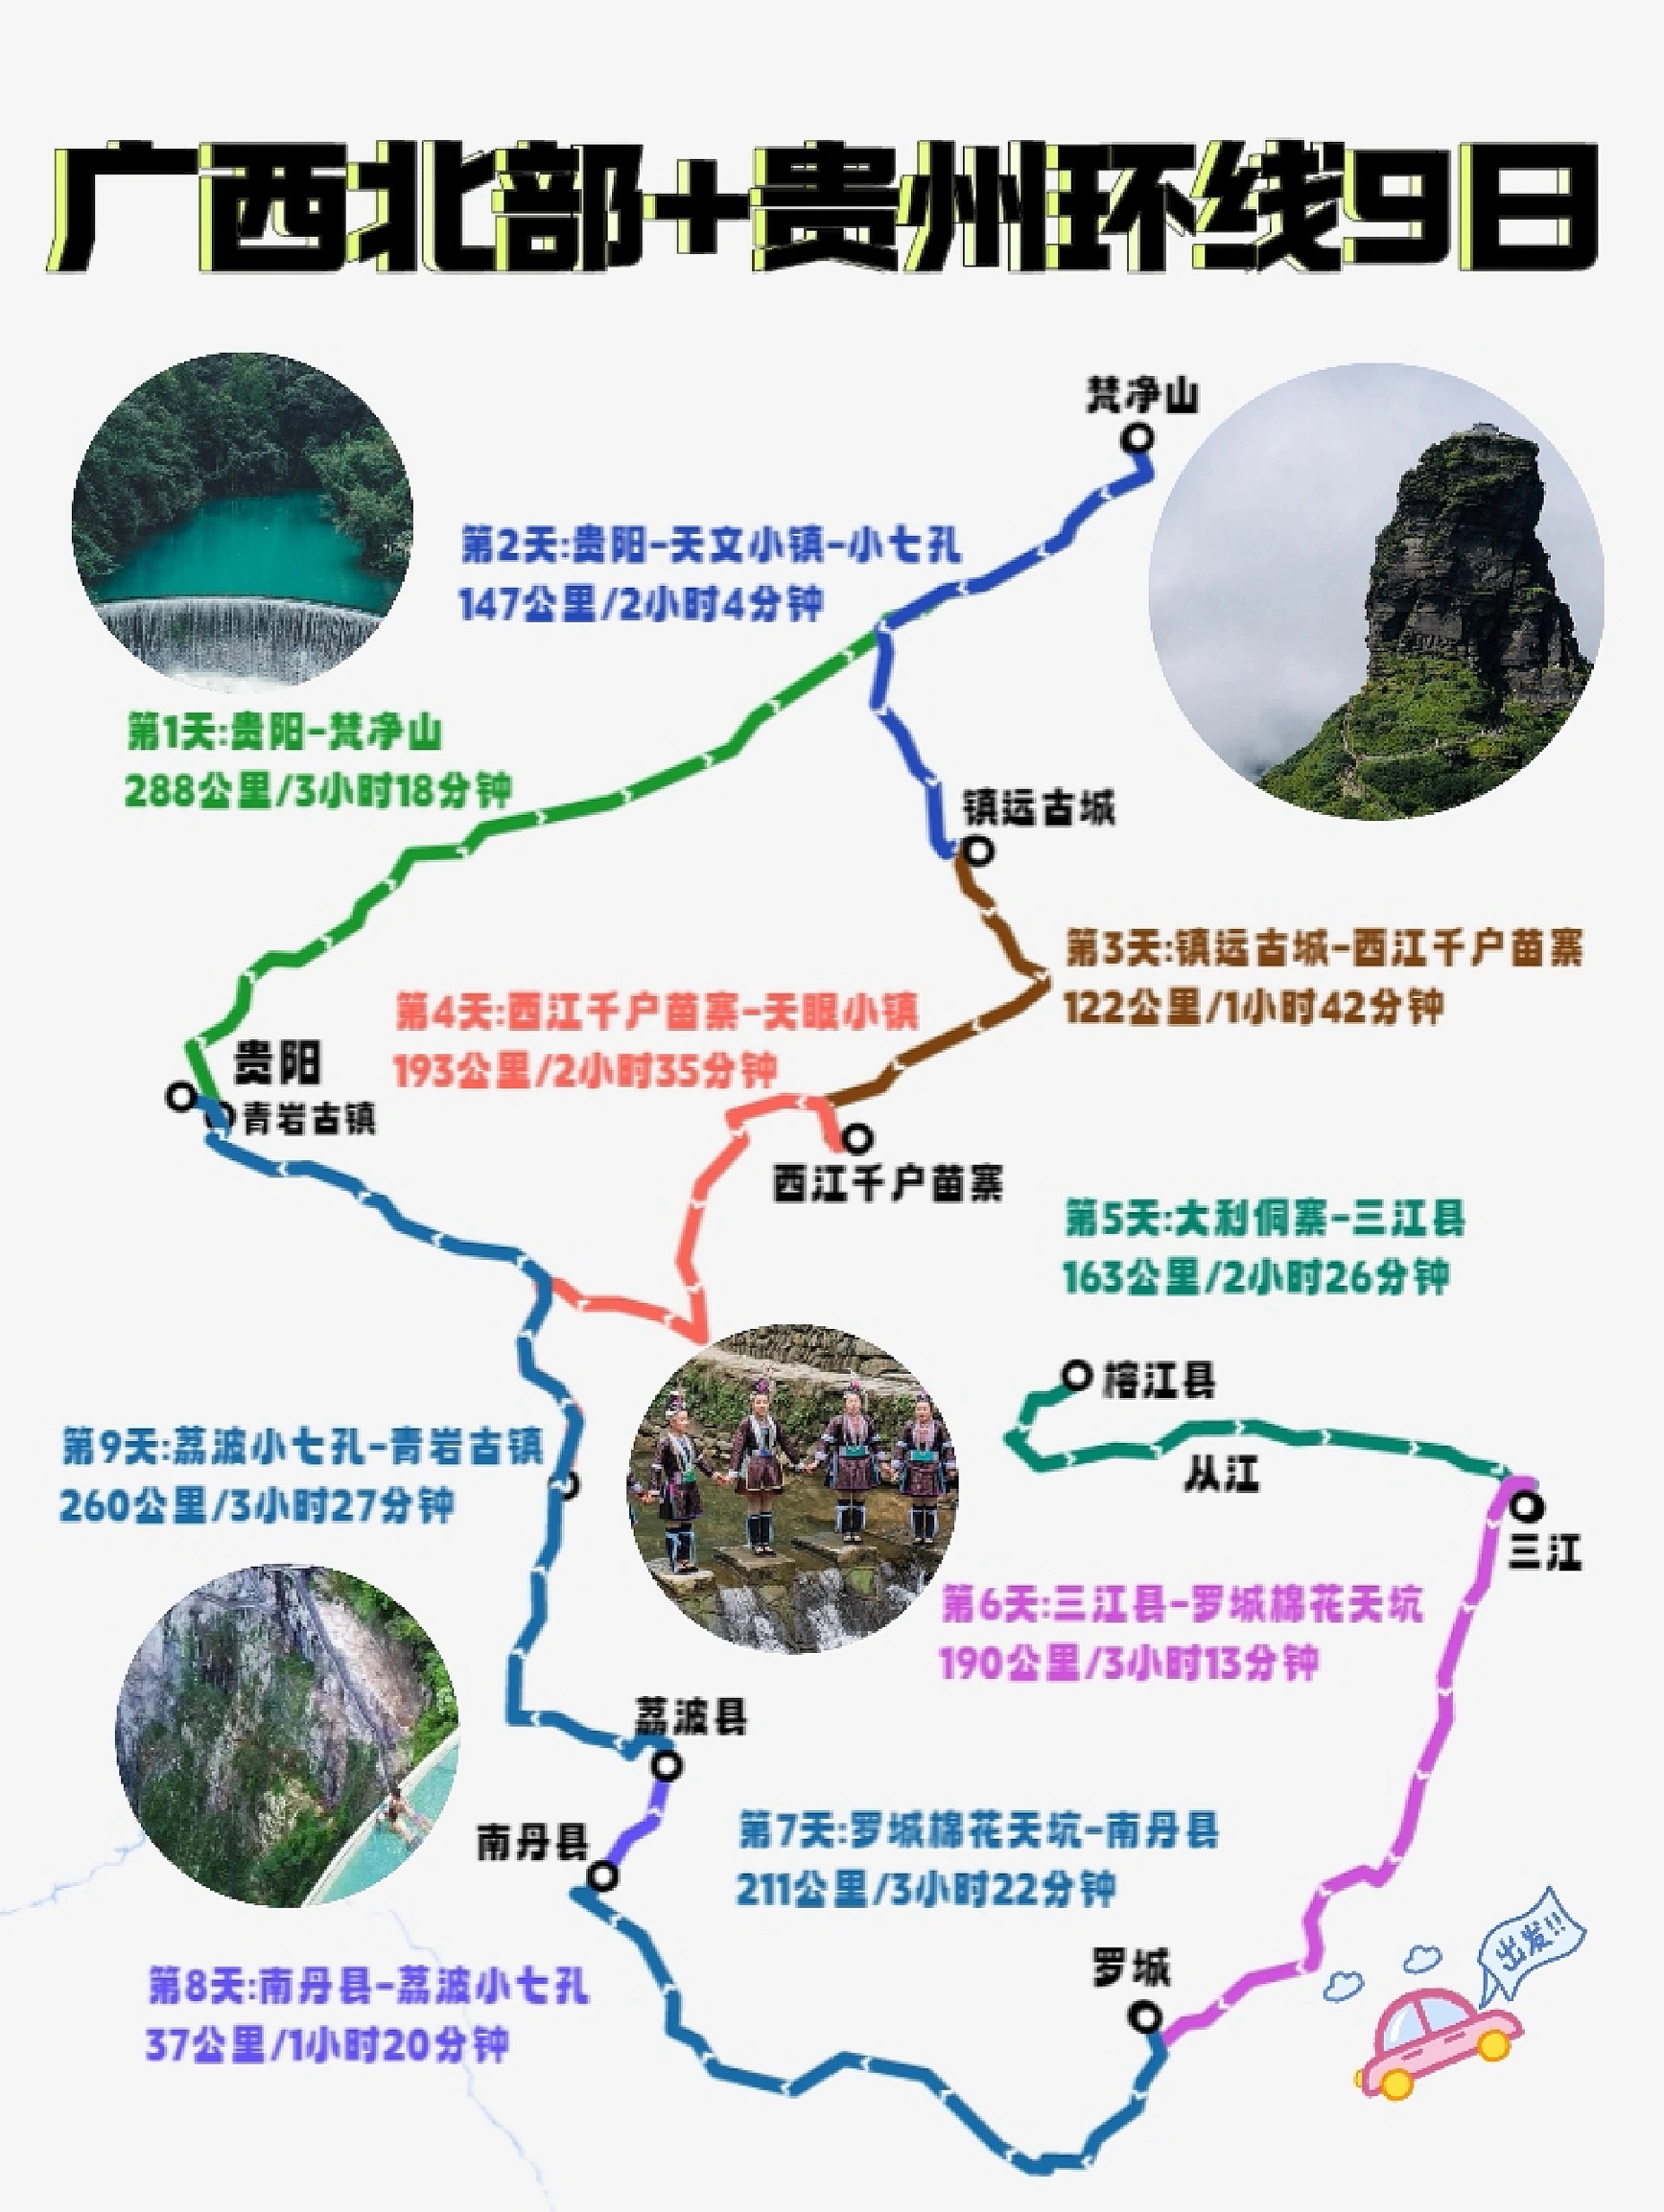 贵州➕广西旅游详细攻略来了❗千万别踩坑❗